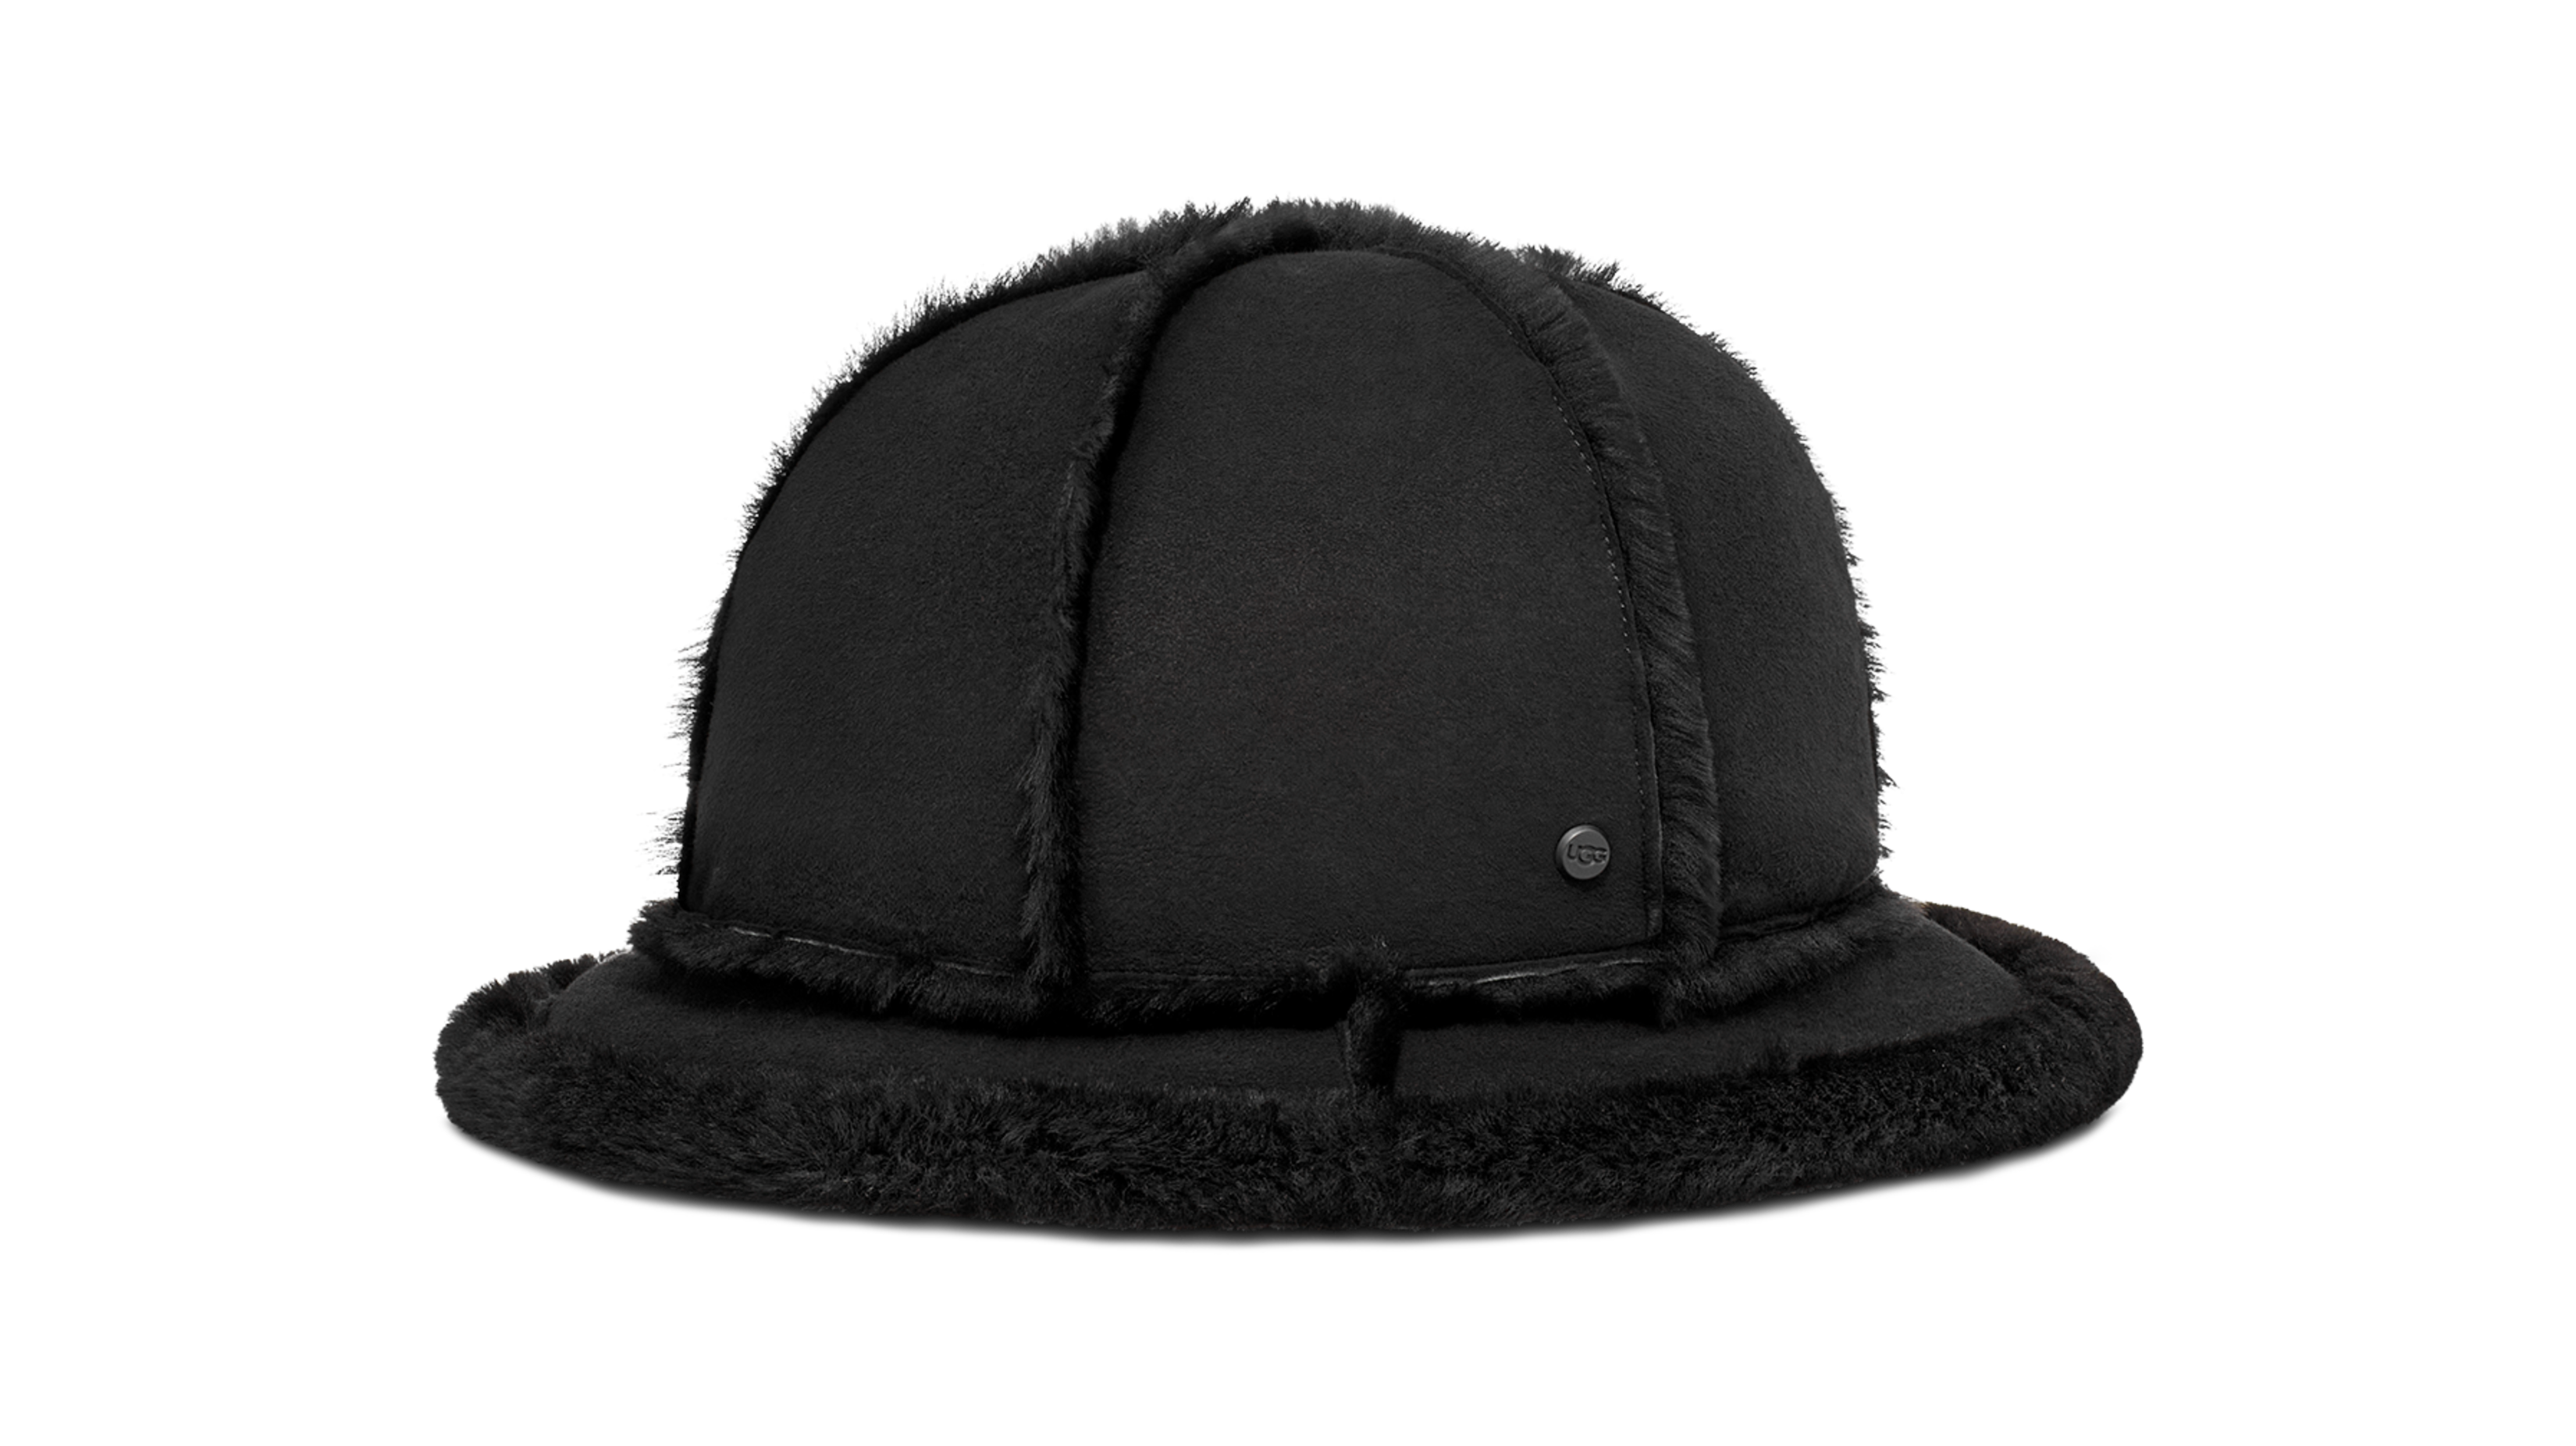 Sheepskin Spillseam Bucket Hat | UGG®